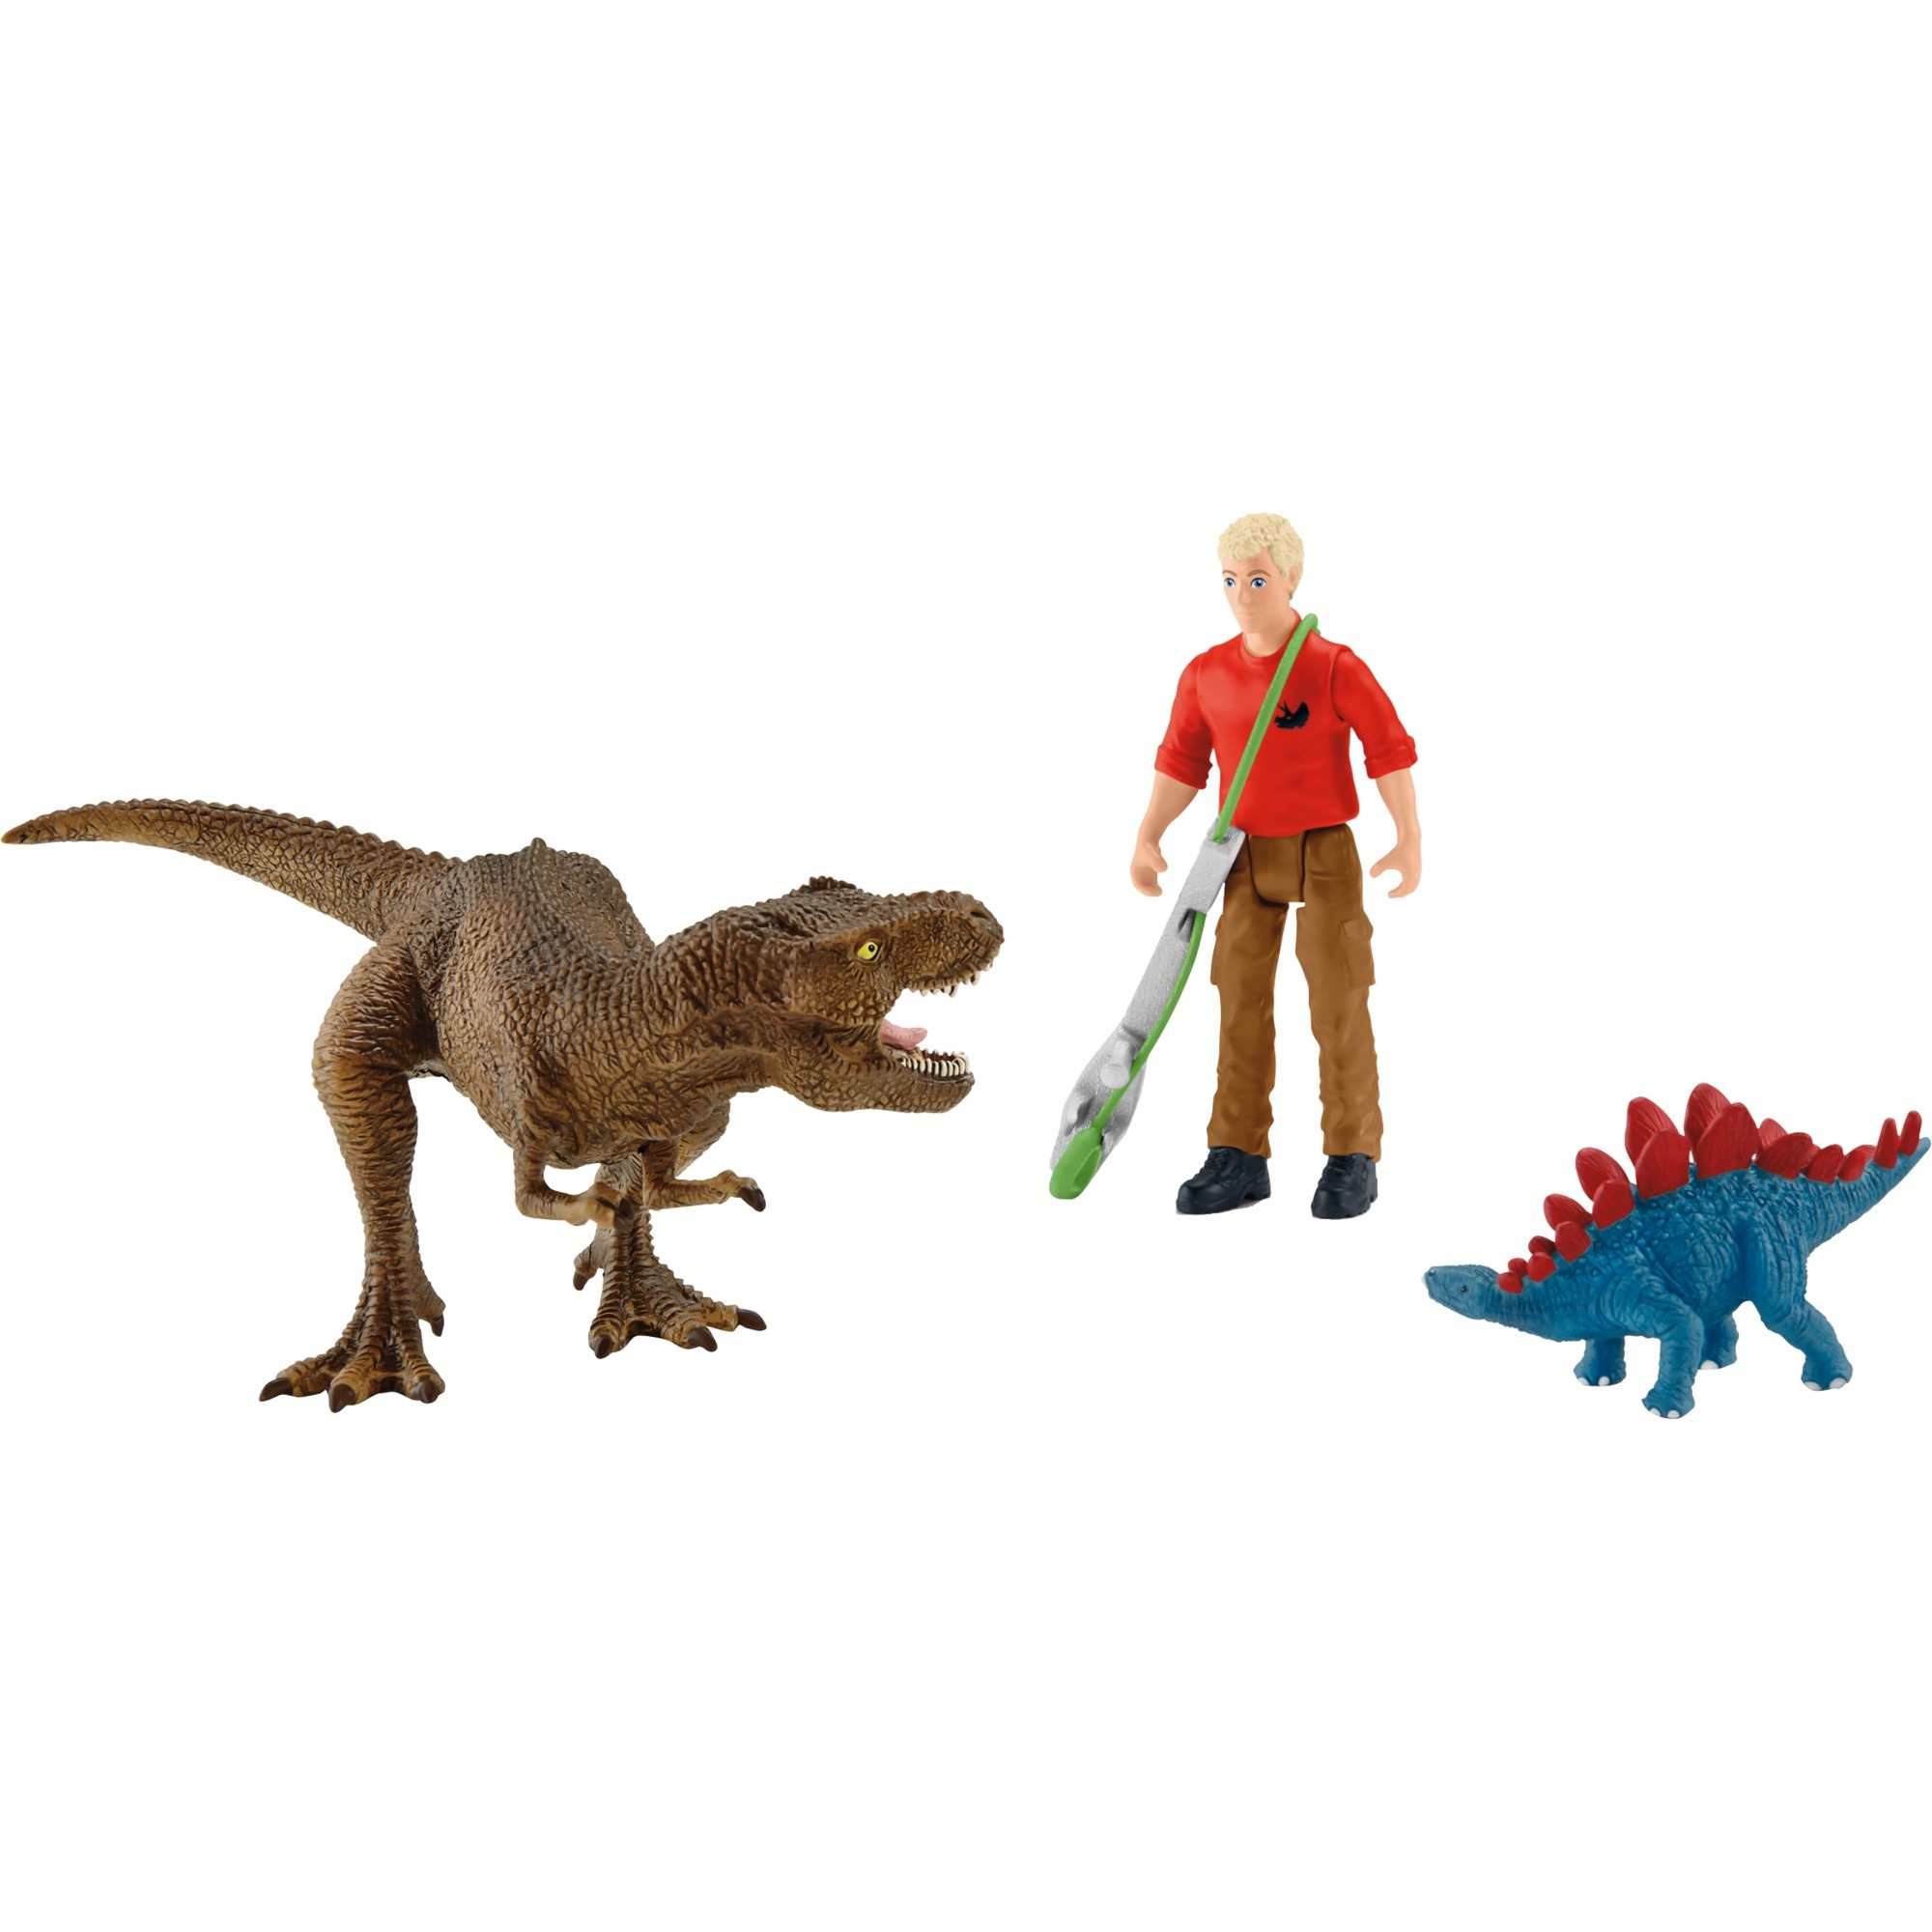 Image of Alternate - Dinosaurs Tyrannosaurus Rex Angriff, Spielfigur online einkaufen bei Alternate